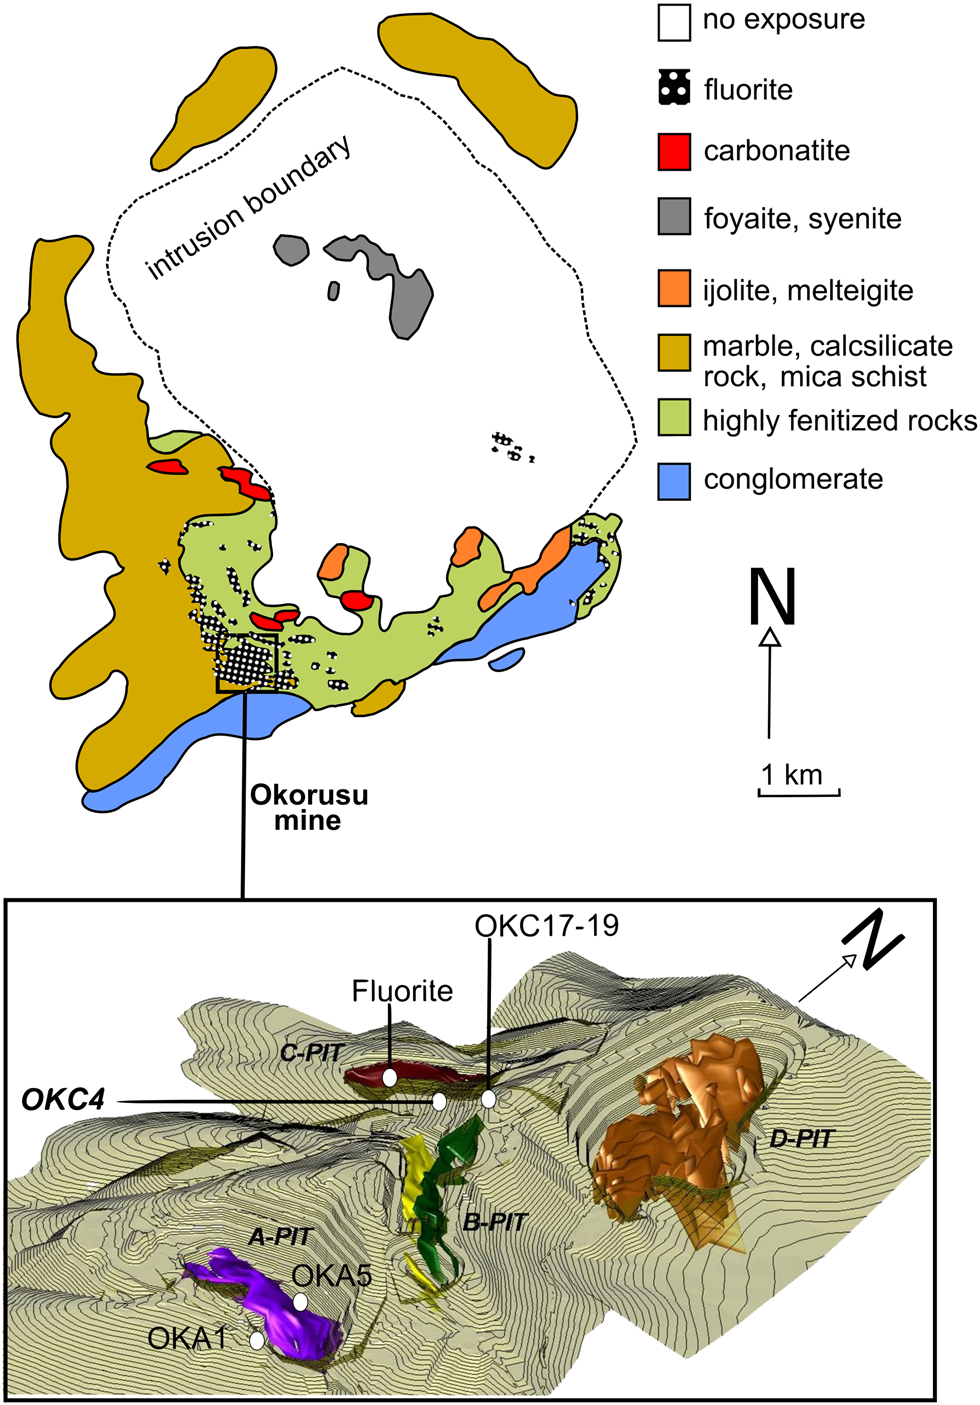 Origin of Cretaceous alkaline annular structures in the peri